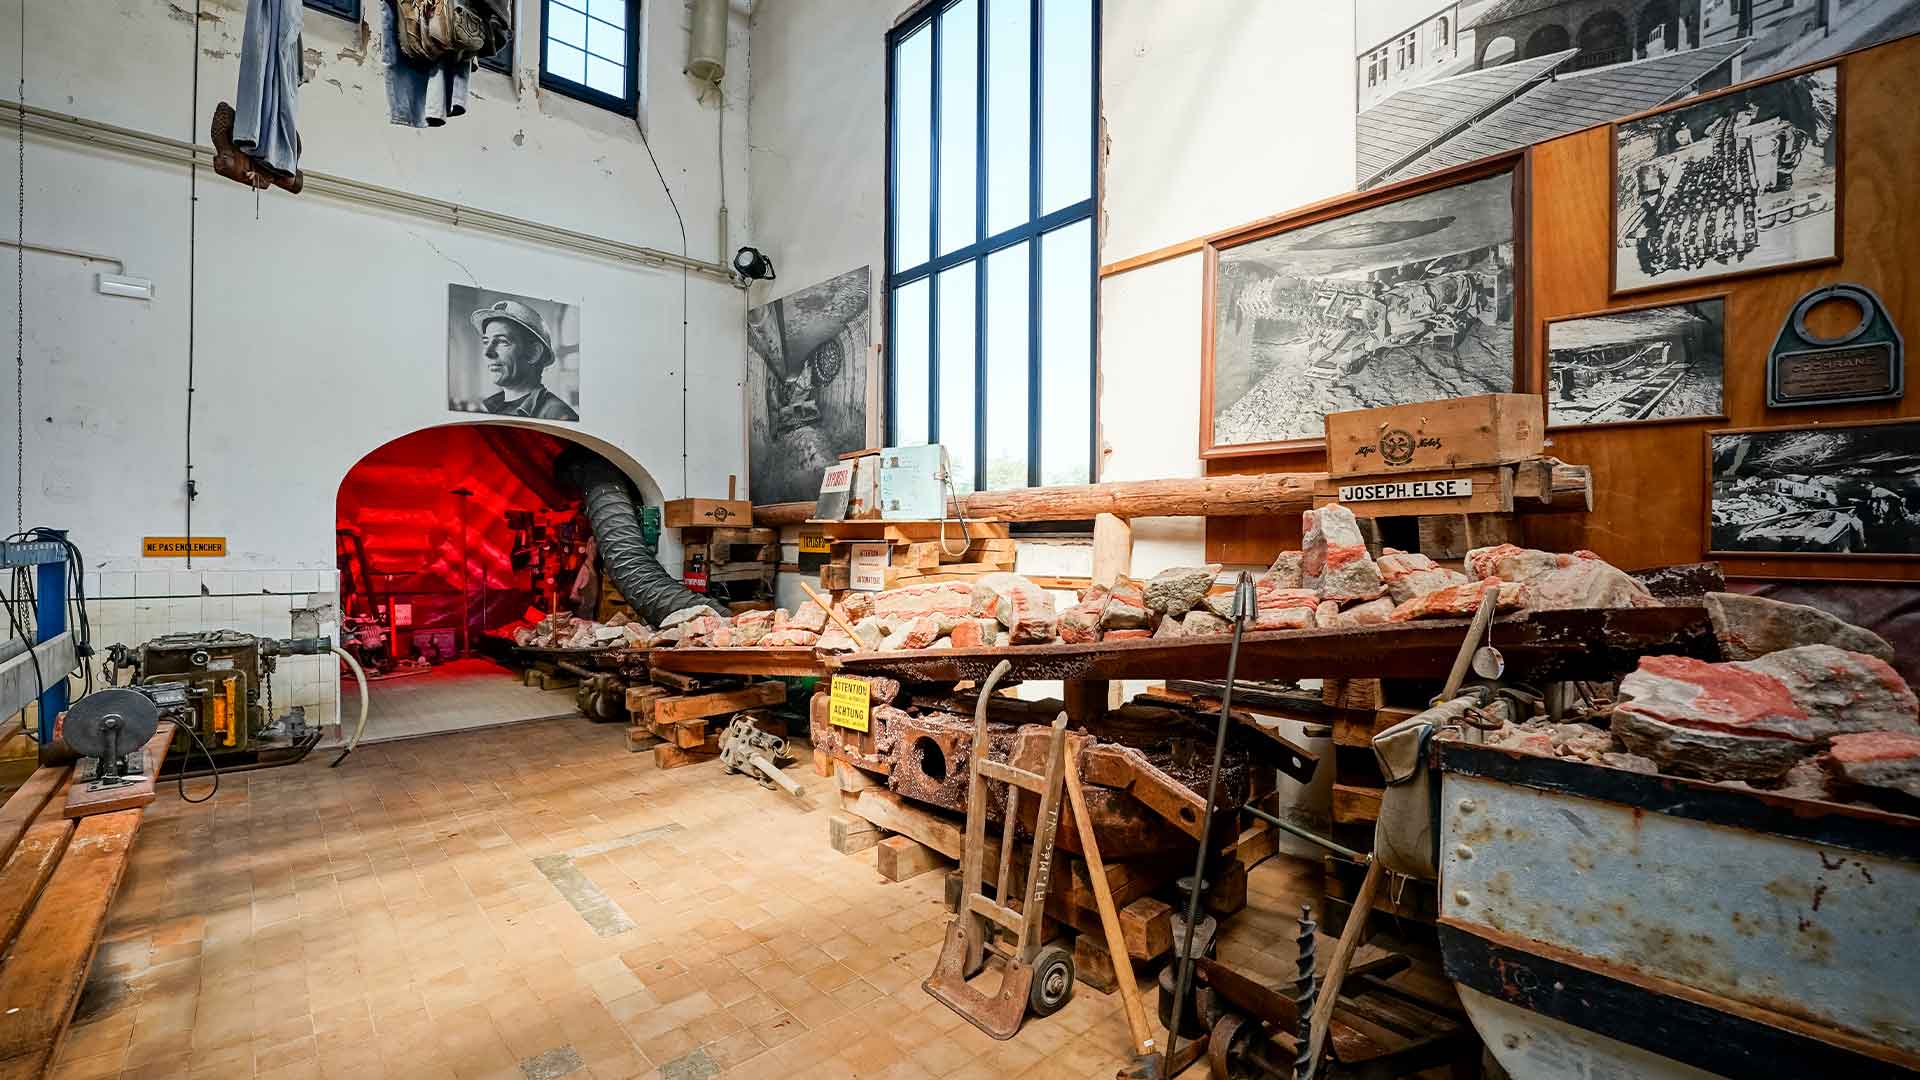 Musée de la Mine et de la Potasse